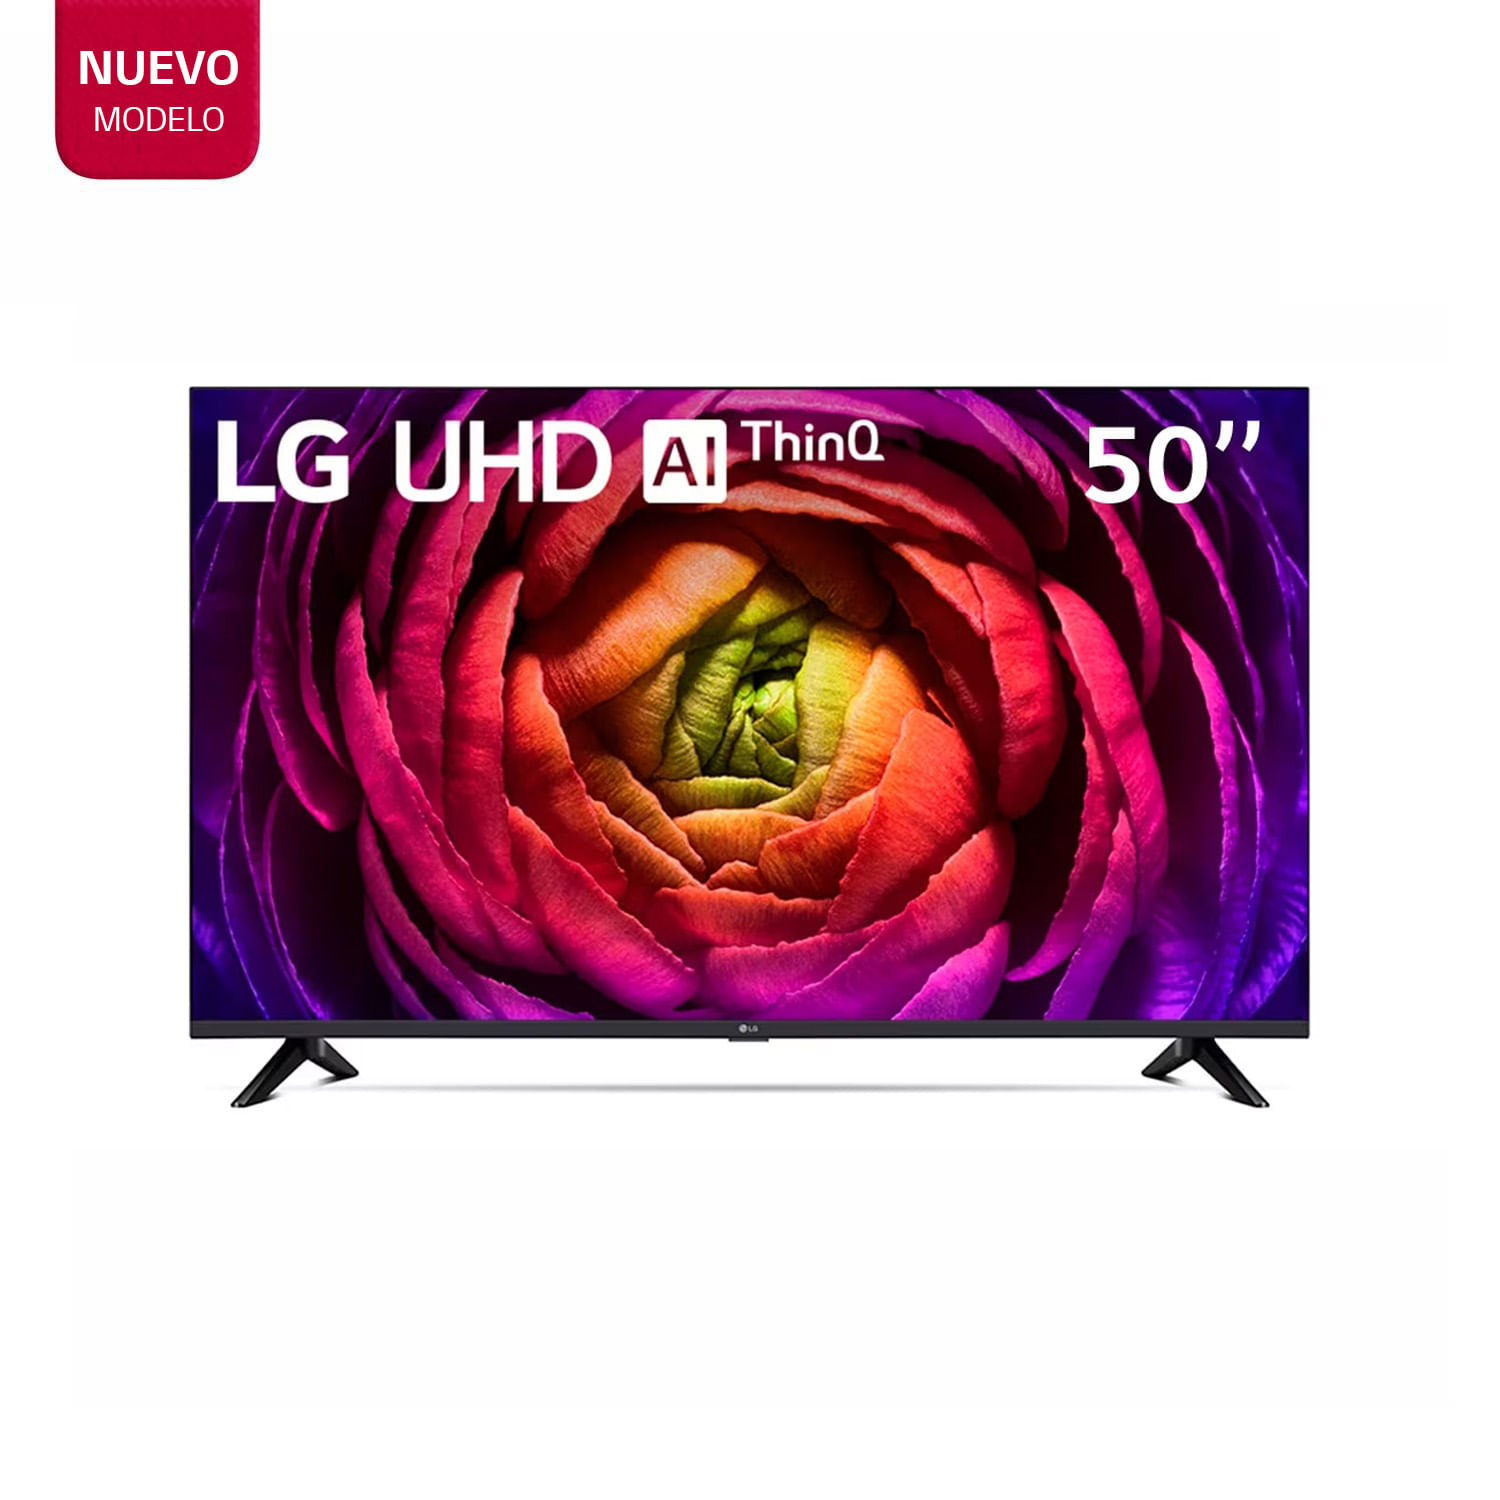 Televisor LG 50" LED Smart TV UHD 4K con ThinQ AI 50UR7300PSA